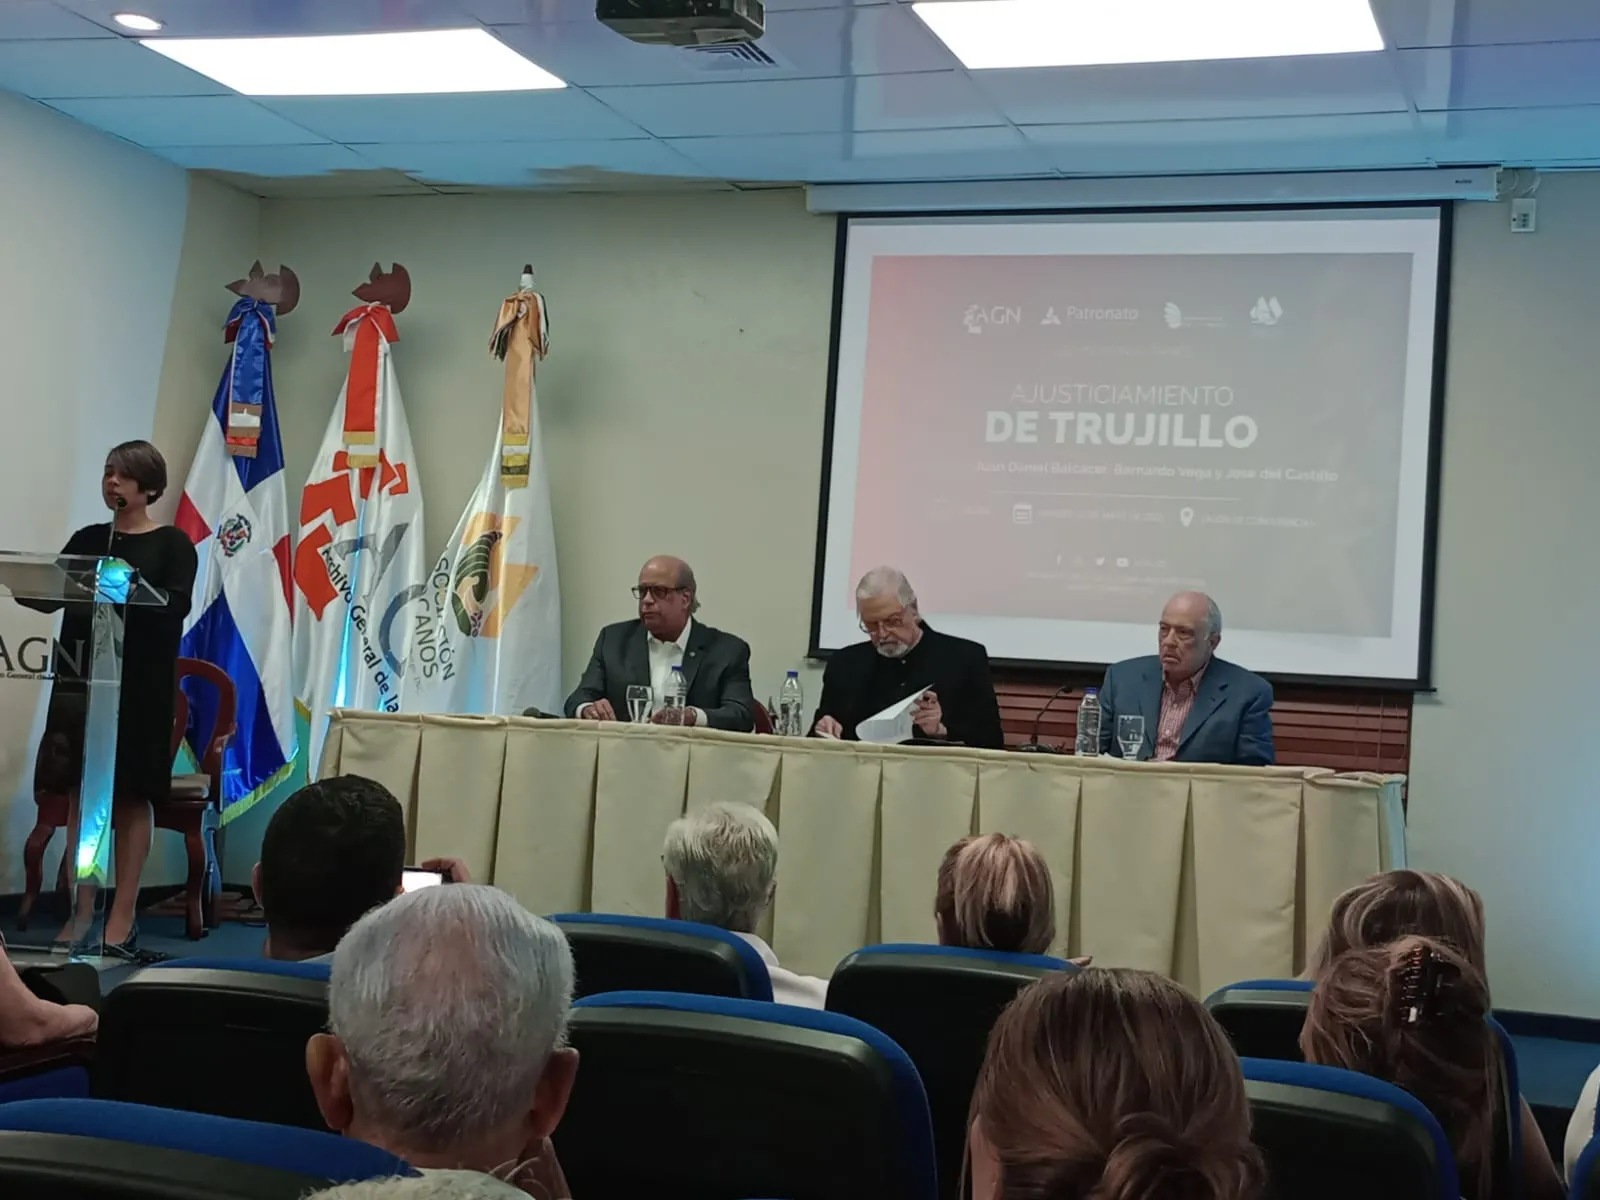 El ajusticiamiento de Trujillo, paso a paso, narrado por Juan Daniel Balcácer